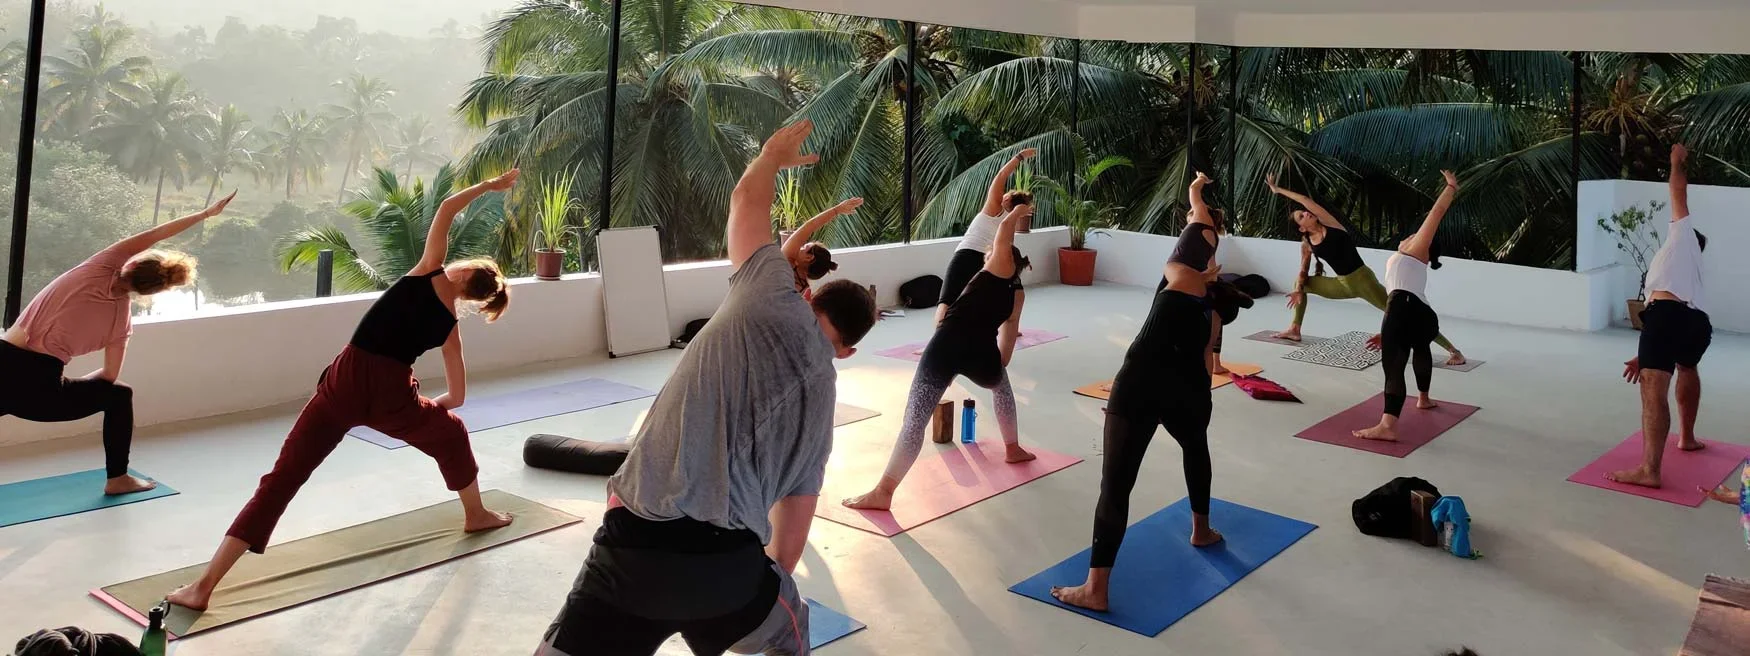 100 Hours Yoga Teacher Training Course by Diya Yoga Goa, India10.webp